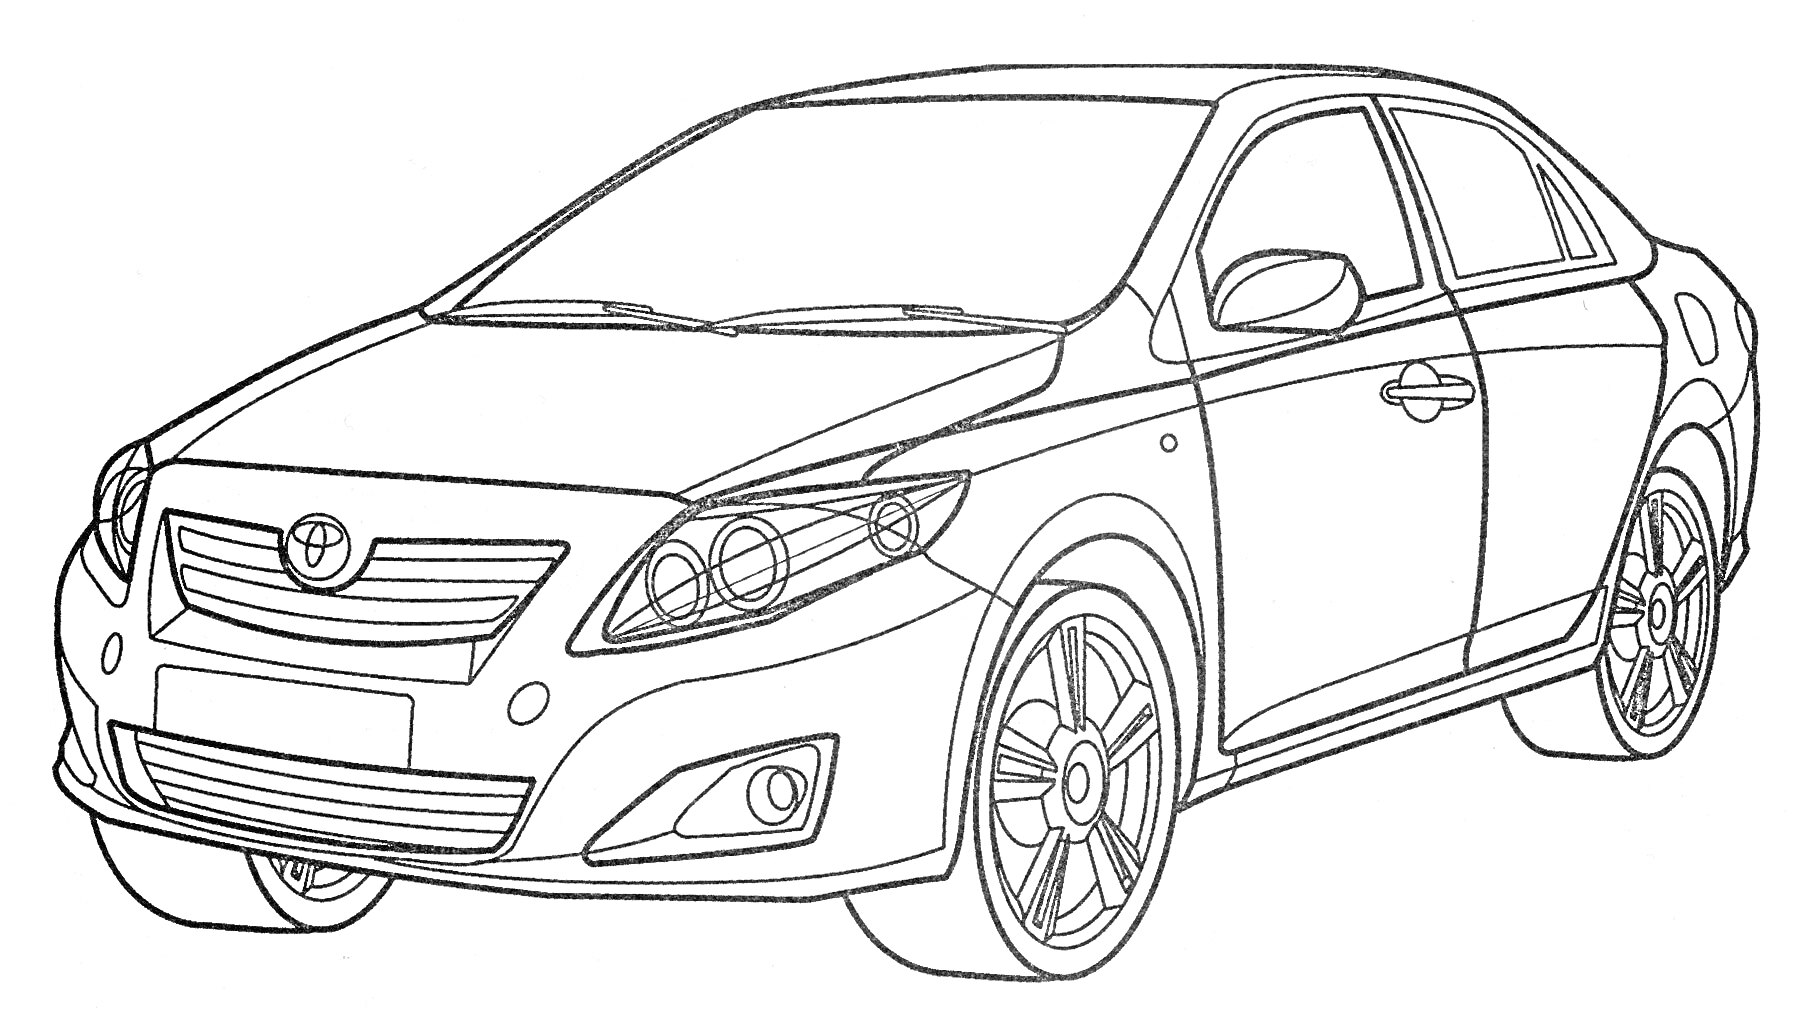 Контурный рисунок автомобиля Toyota Corolla, вид спереди-сбоку, видны передние и задние фары, двери, капот, лобовое стекло, боковые окна и колеса.